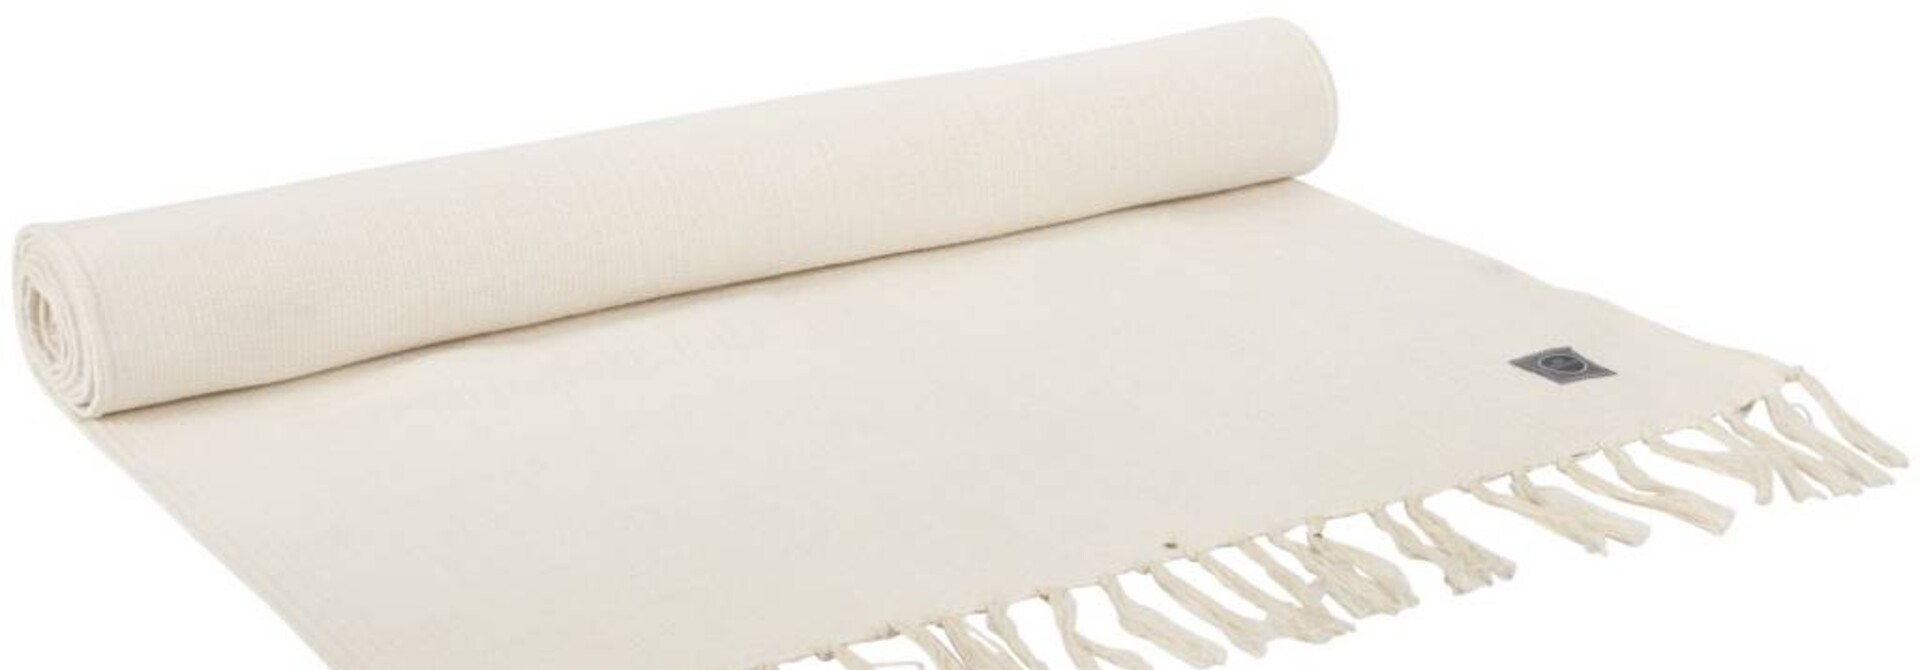 Yogamatte Teppich Baumwolle 200cm 65cm 2mm - Natürlich